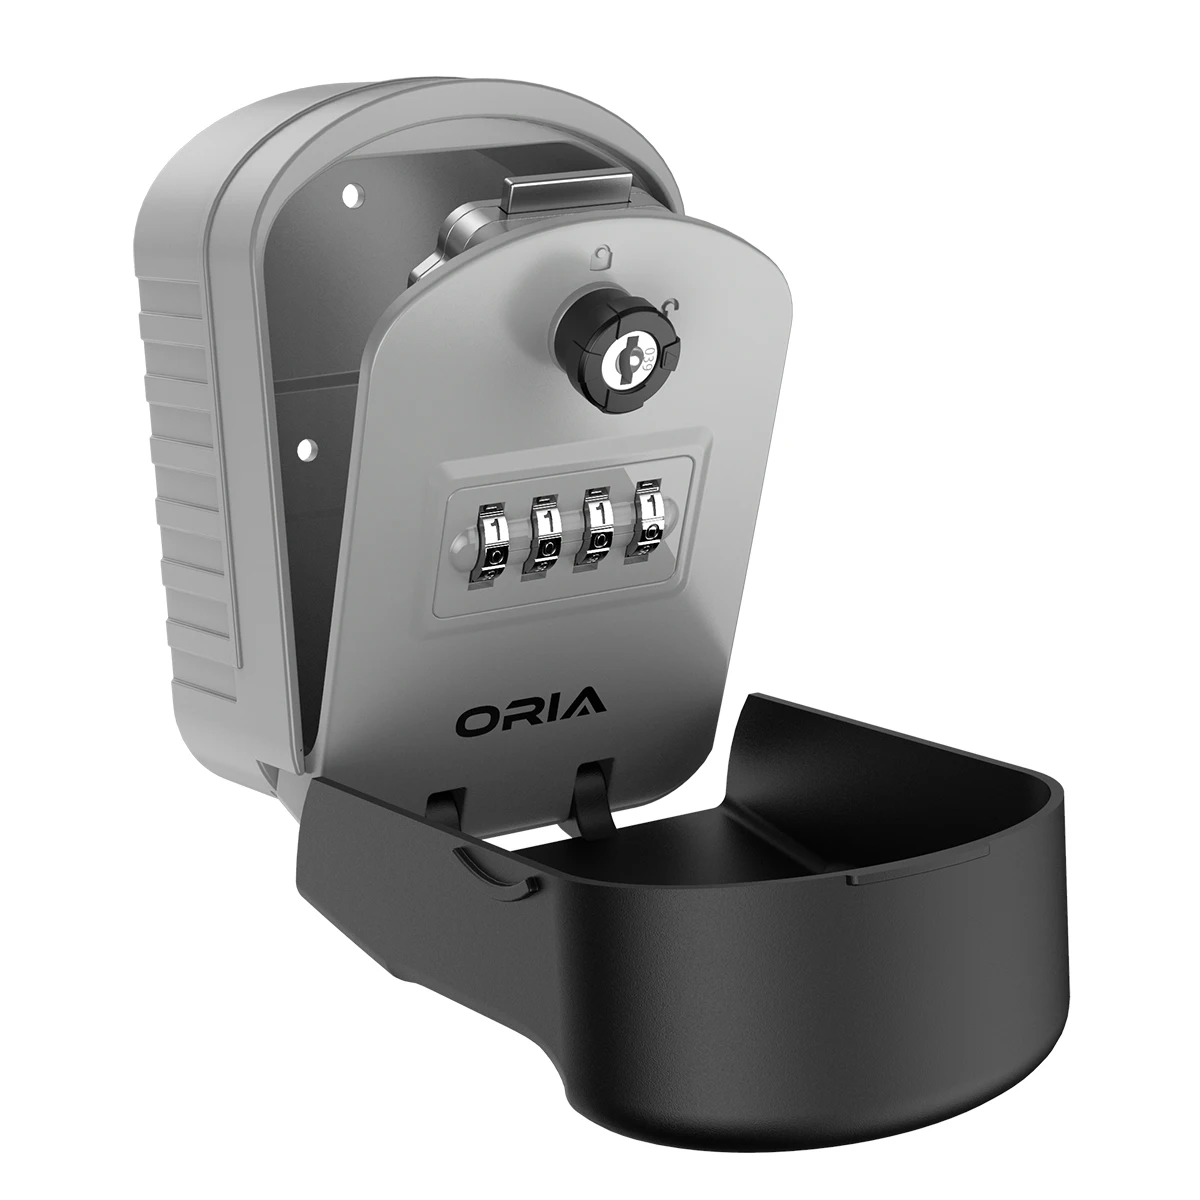 ORIA-صندوق قفل مفتاح مكون من 4 أرقام ، صندوق قفل ، مثبت على الحائط ، مقاوم للماء ، للمنزل والخارج